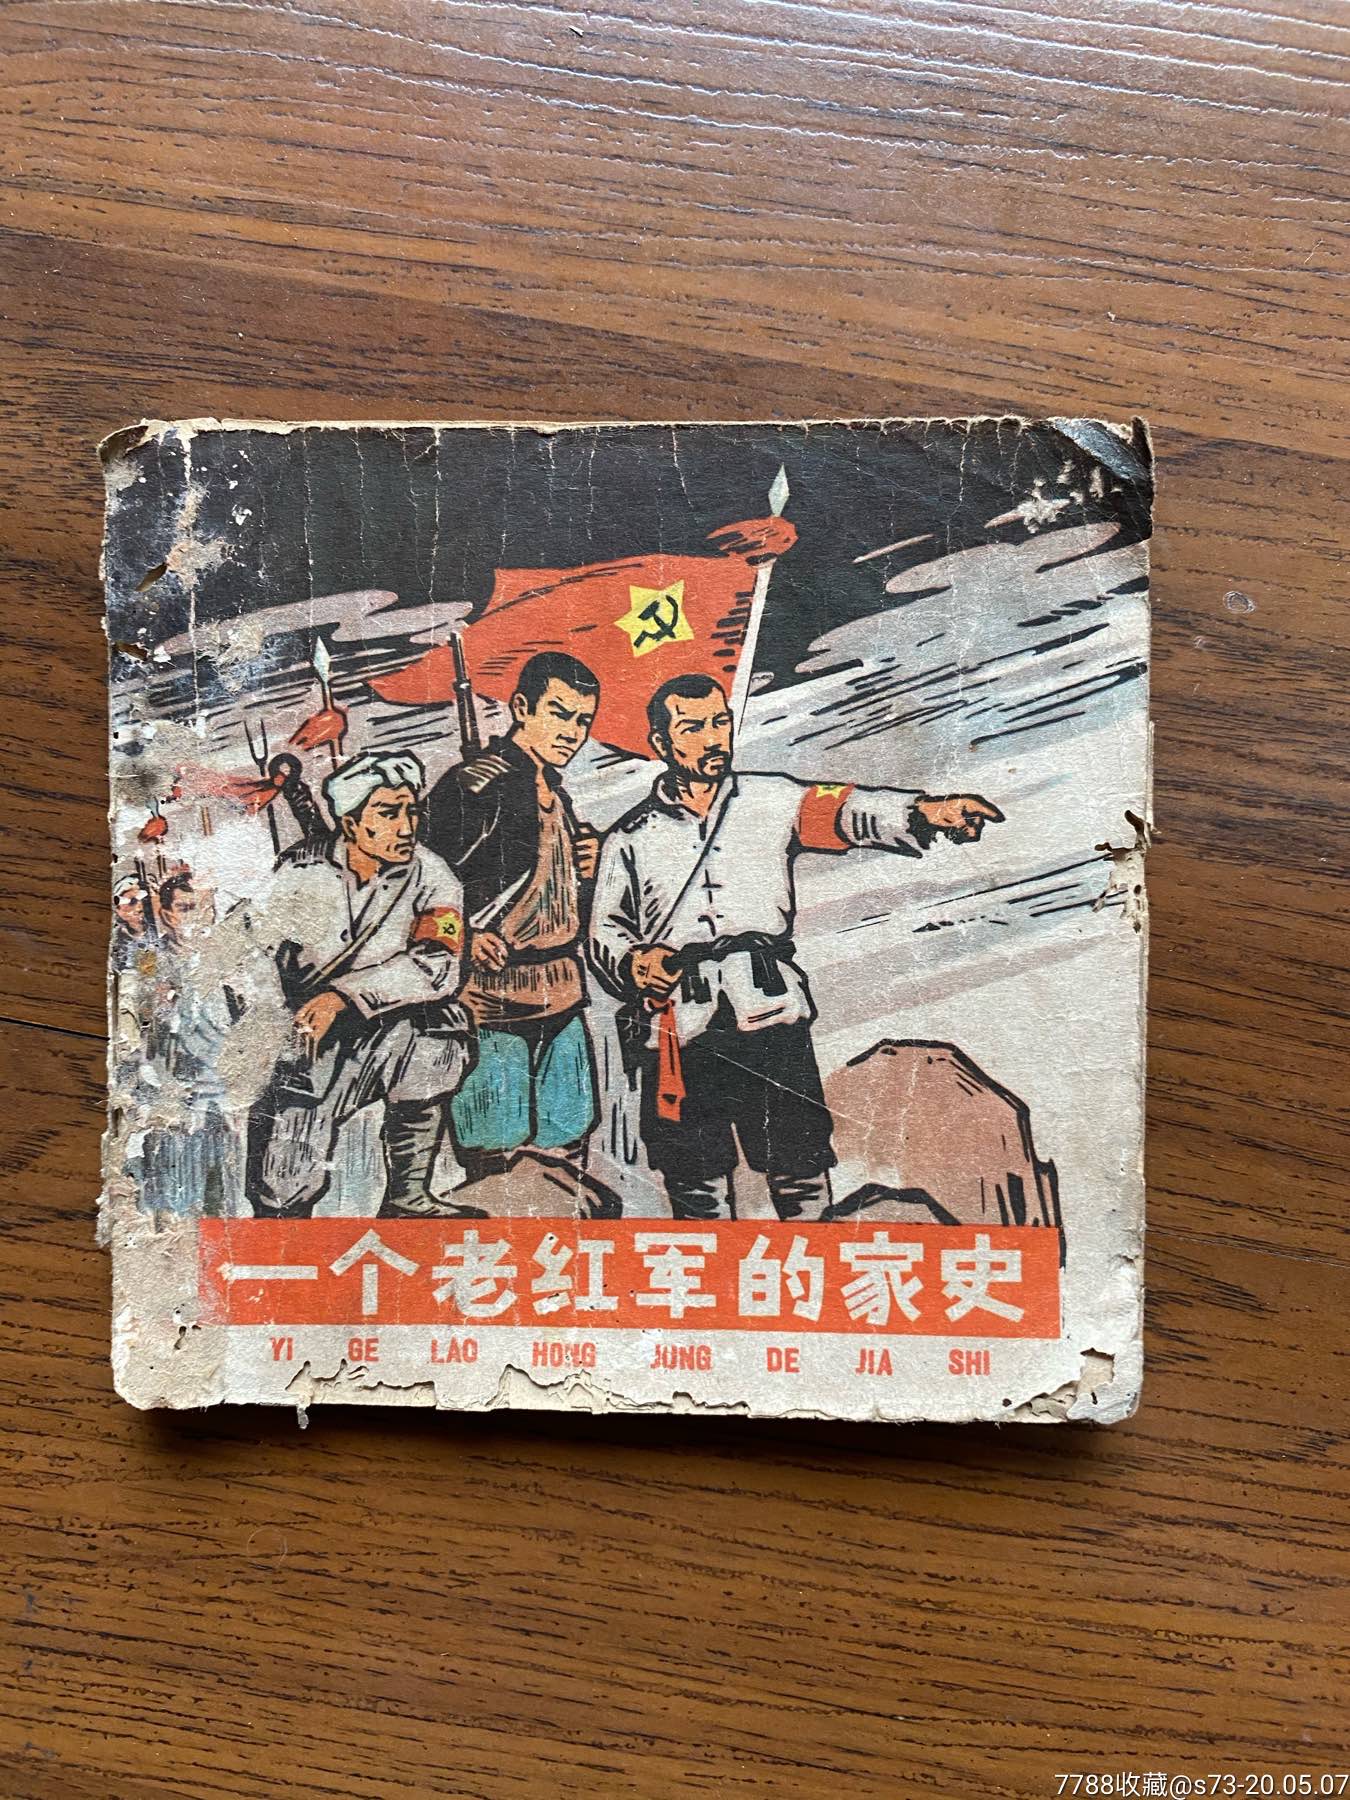 一个老红军的家史,连环画/小人书,六十年代(20世纪,绘画版连环画,48